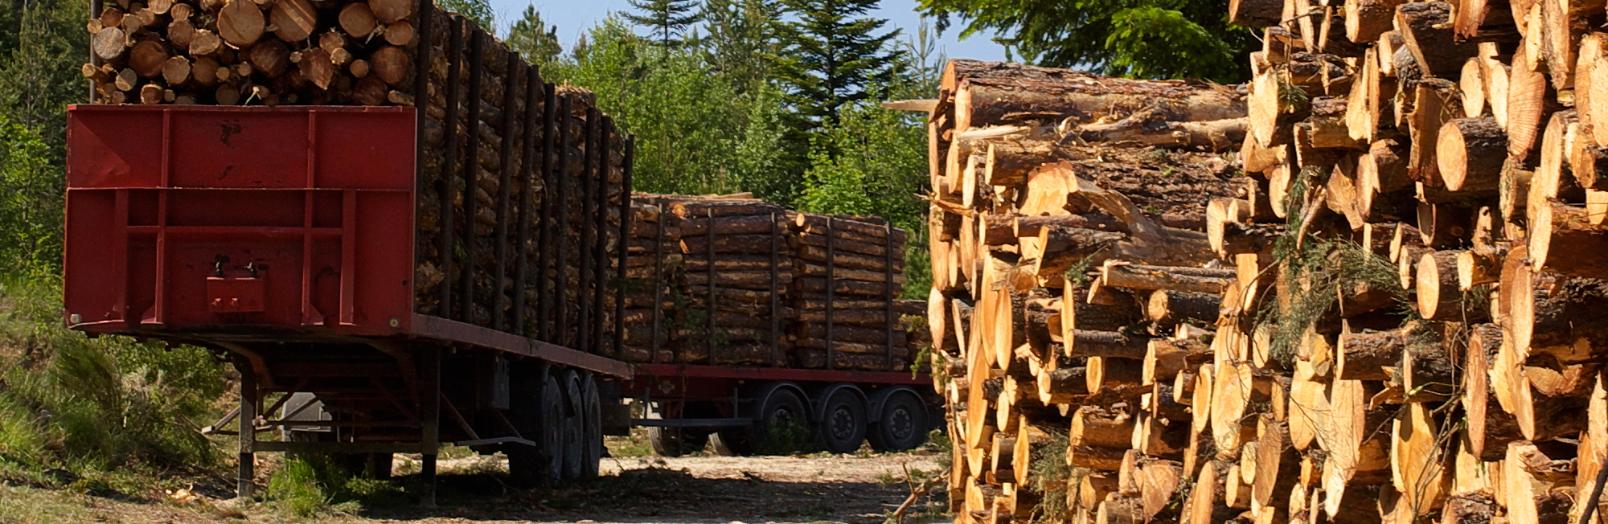 Экспорт лесопродукции из Брянской области идёт в 30 стран мира